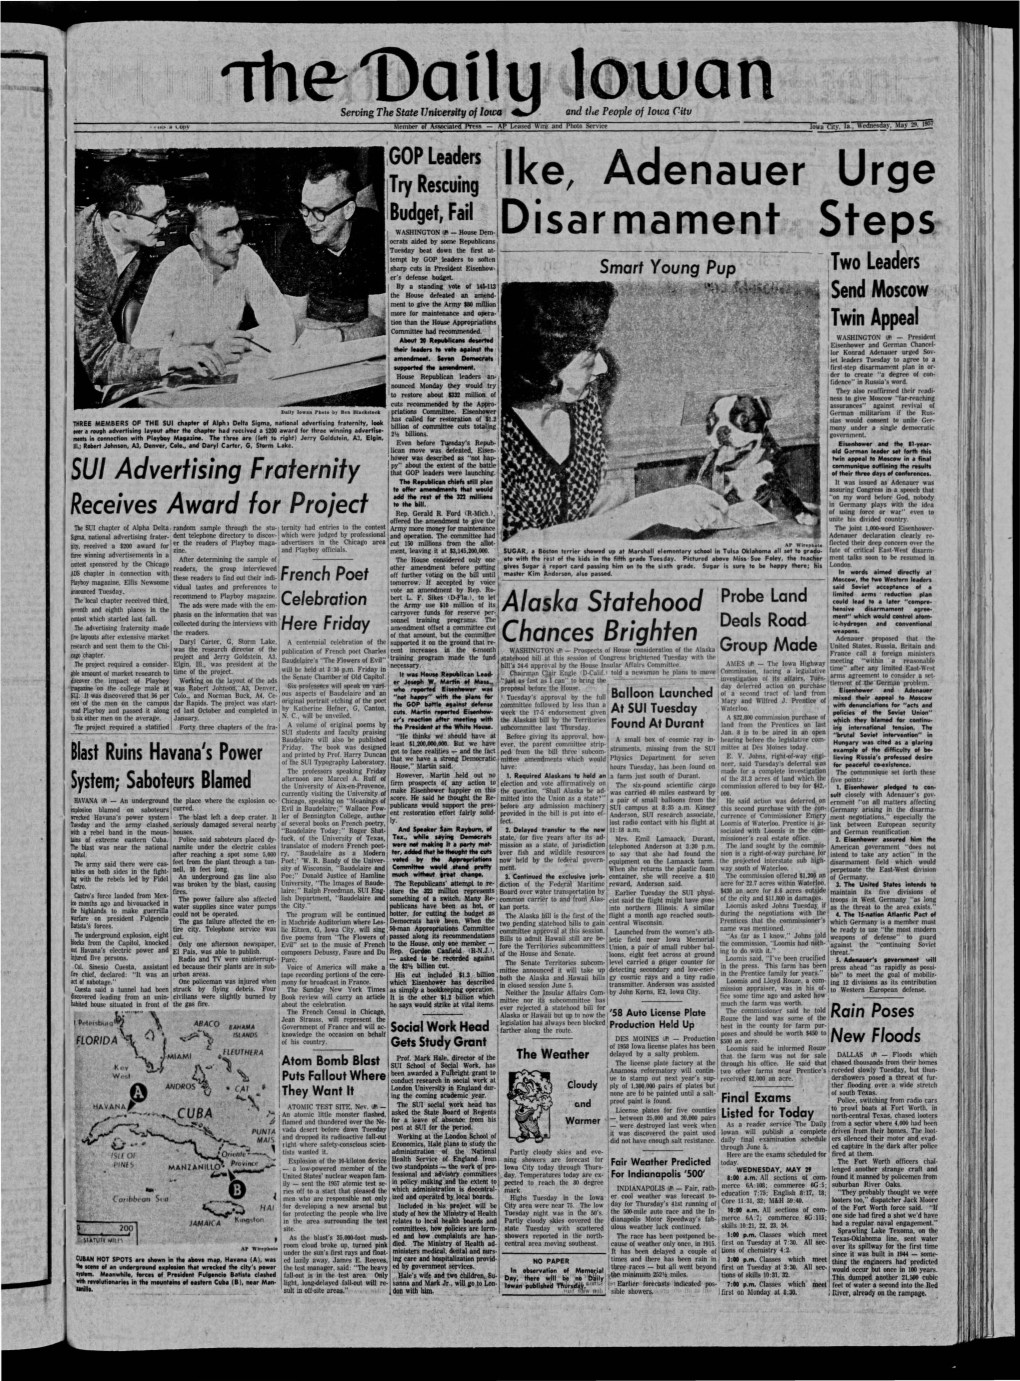 Daily Iowan (Iowa City, Iowa), 1957-05-29